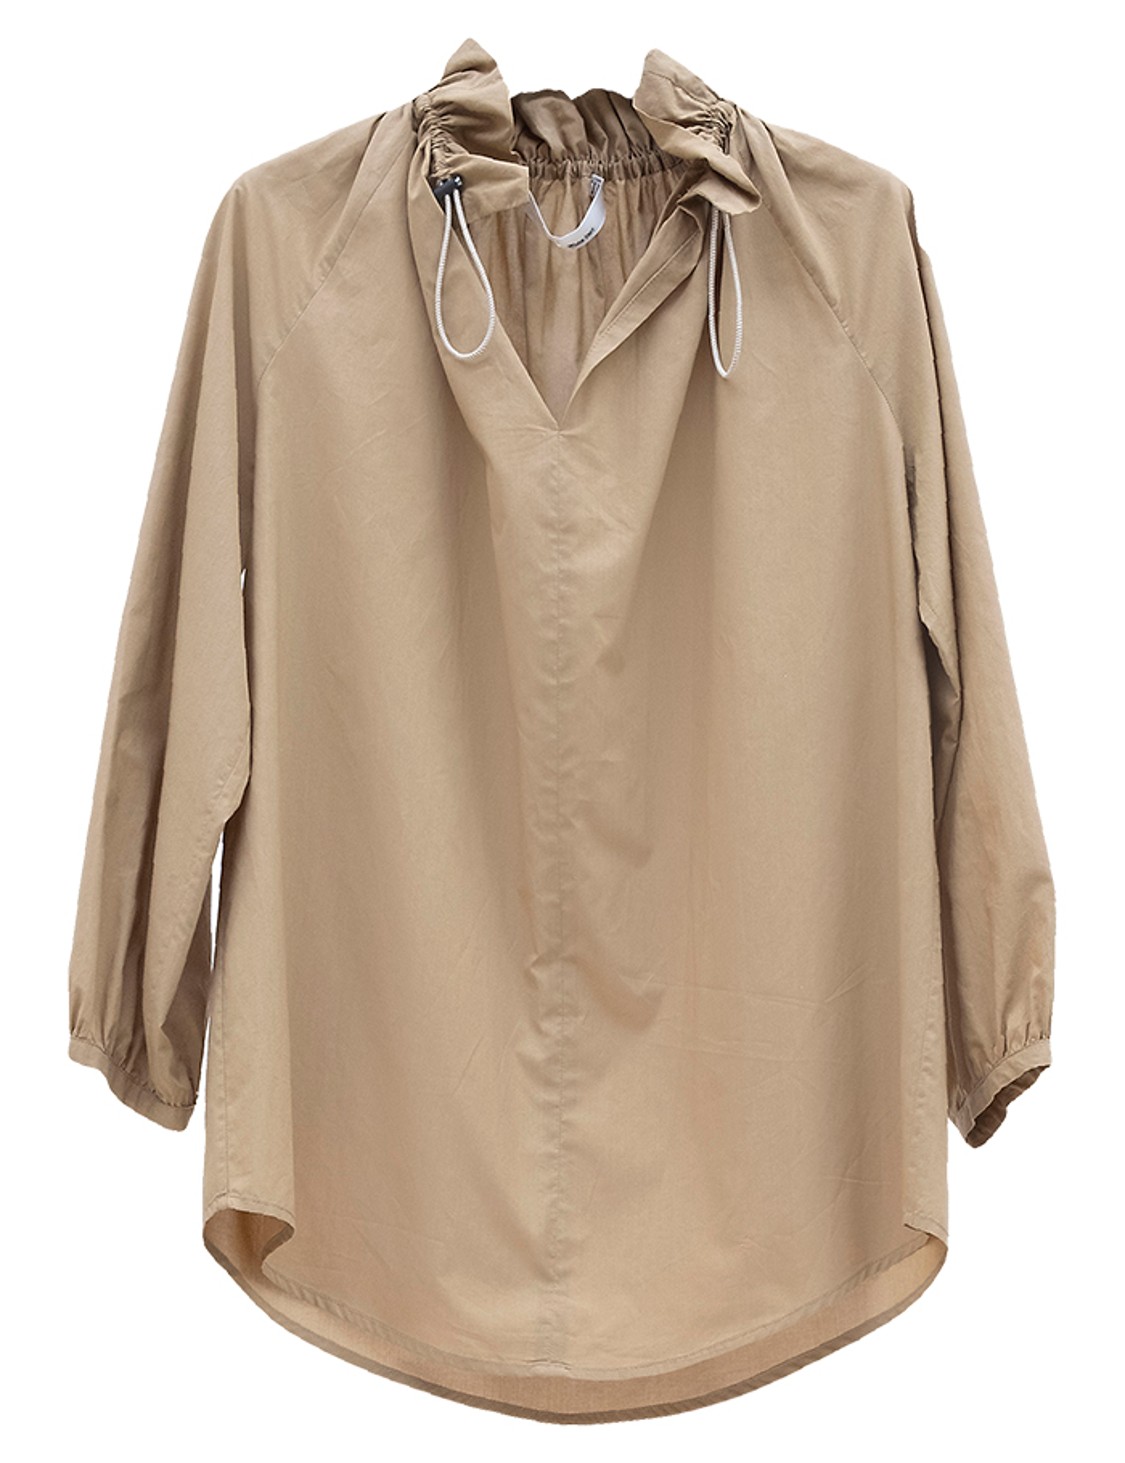 shop Tela  Camicie: Camicia Tela, manica lunga, collo a V, elastici regolabili al collo, modello ampio.

Composizione: 100% cotone. number 1704